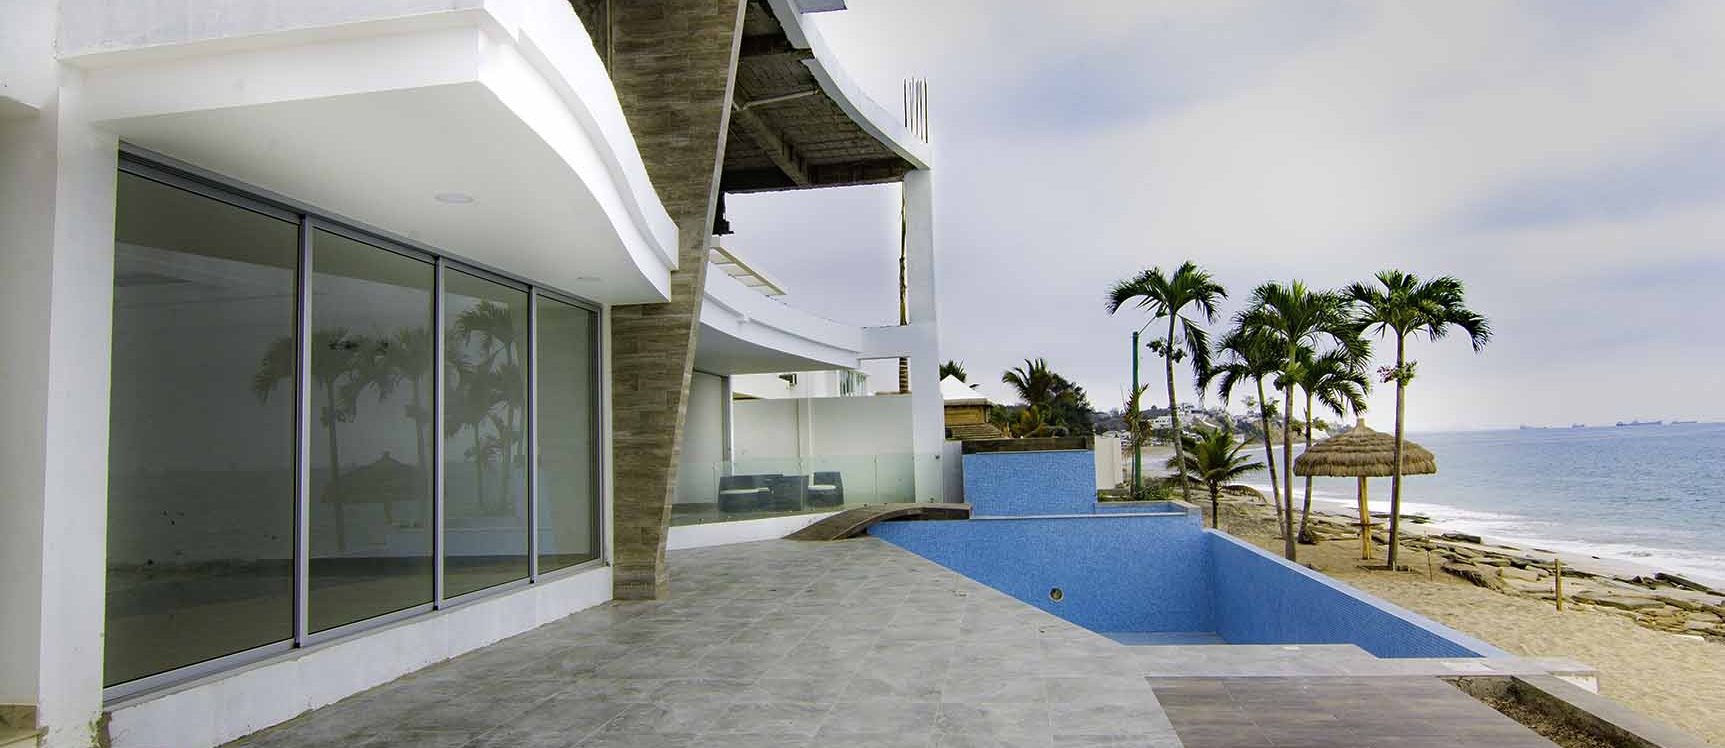 GeoBienes - Departamento en venta frente al mar condominio Nigon Capaes - Plusvalia Guayaquil Casas de venta y alquiler Inmobiliaria Ecuador